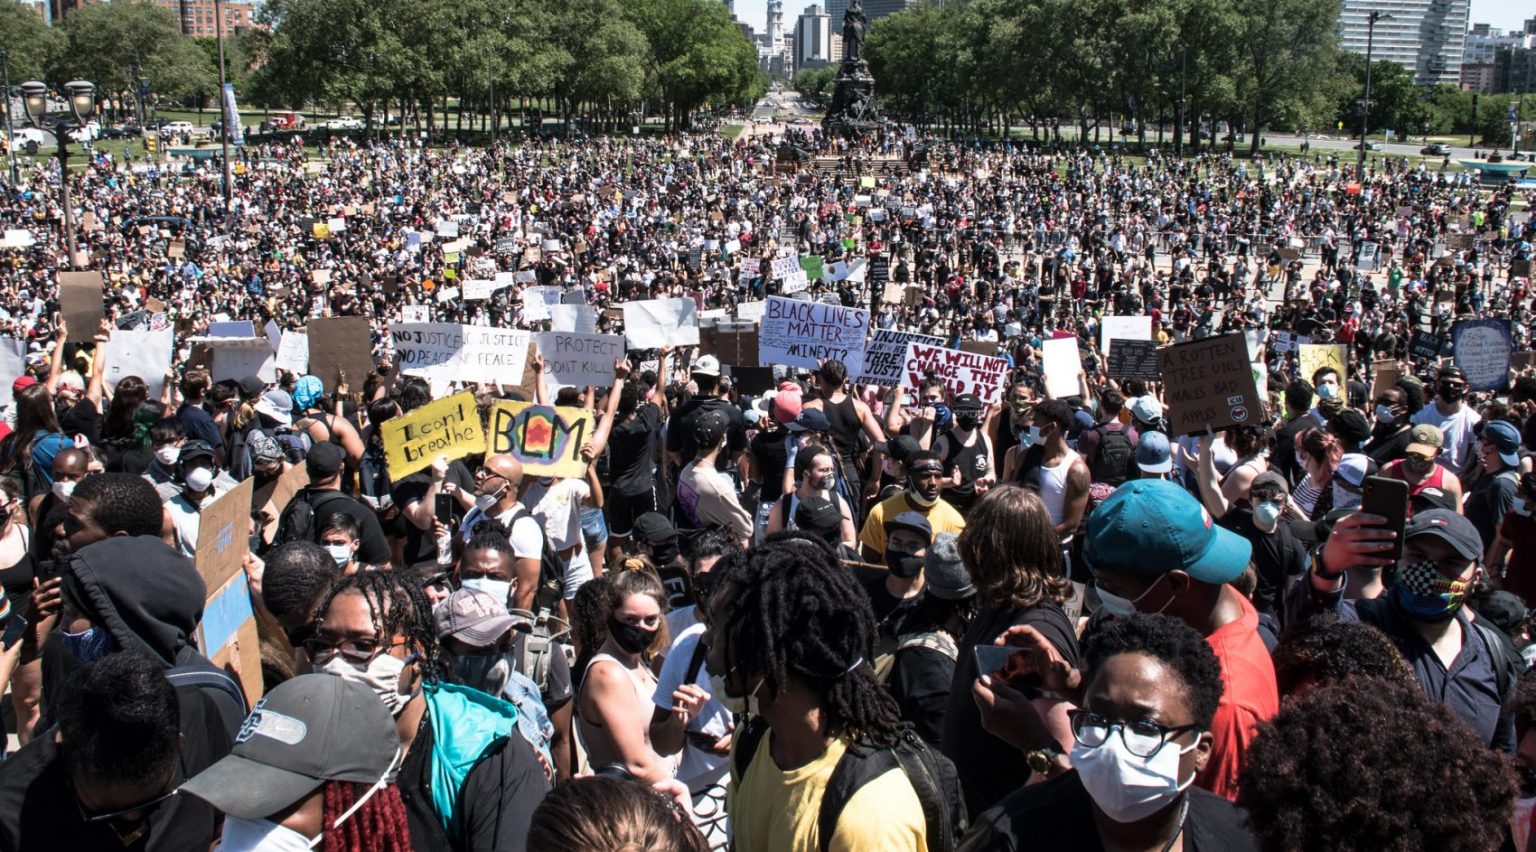 Black Lives Matter Protest George Floyd Image Joe Piette Flickr